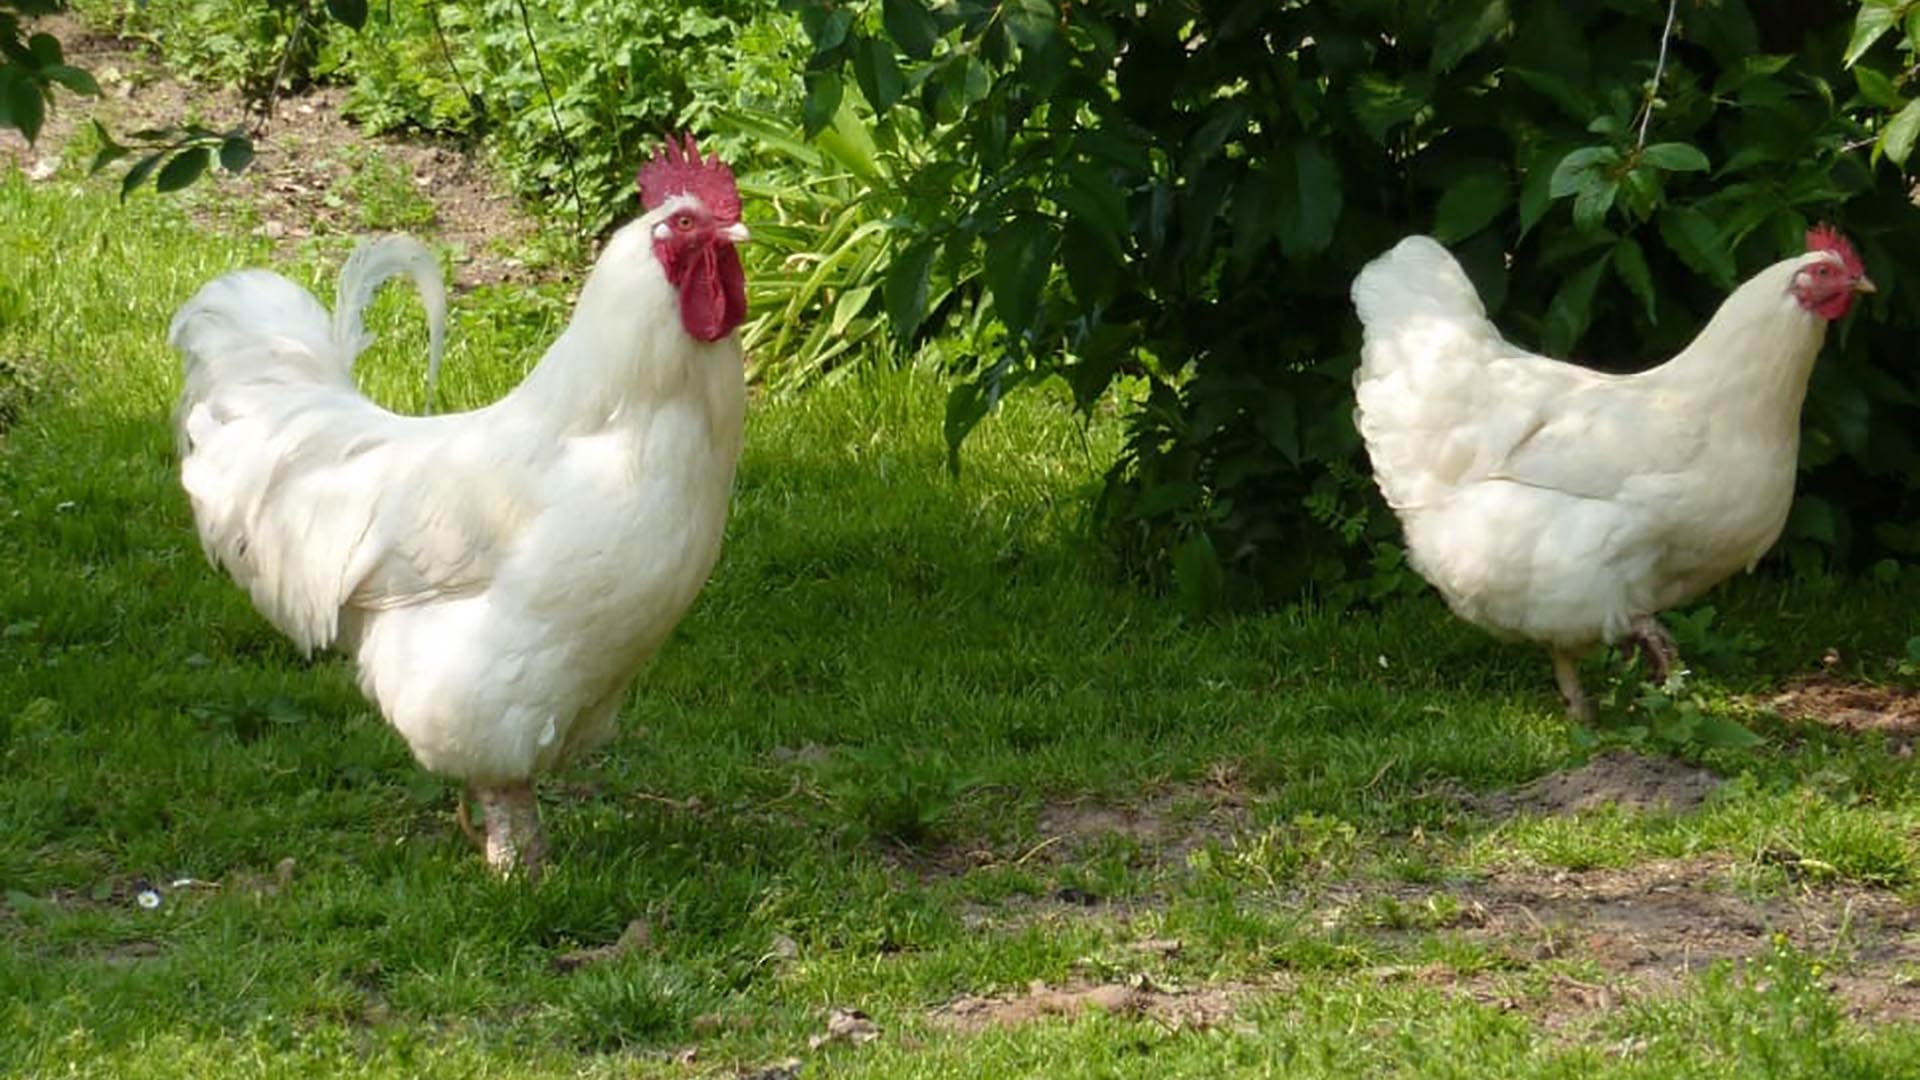 lekken mesh jukbeen Vleesrassen kippen, wat zijn het en welke rassen zijn er? - Kippenhuis.nl